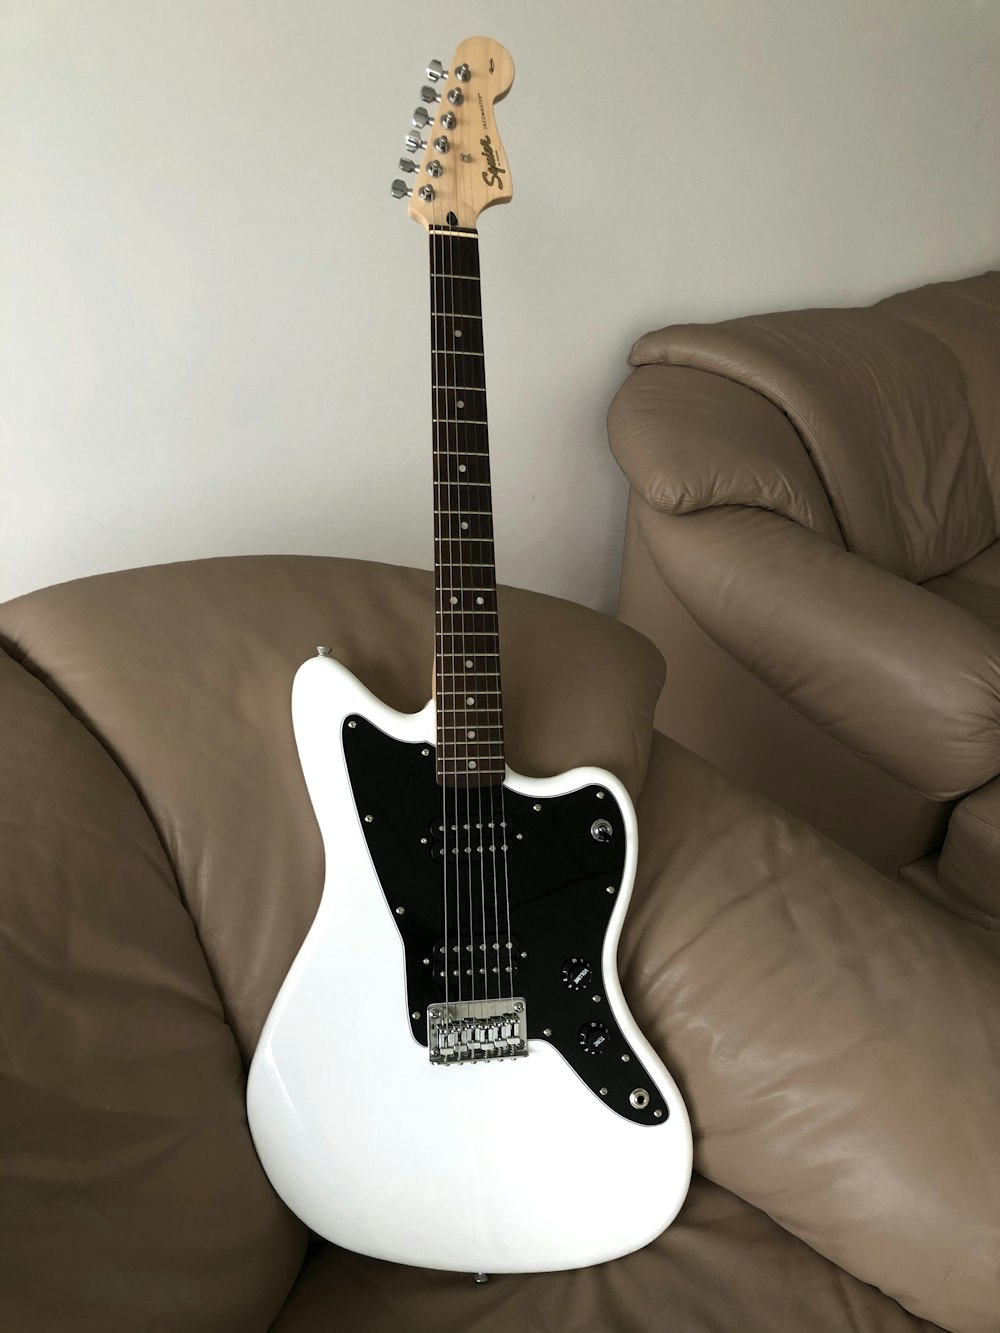 Guitarra eléctrica Stratocaster en blanco y negro sobre sofá marrón